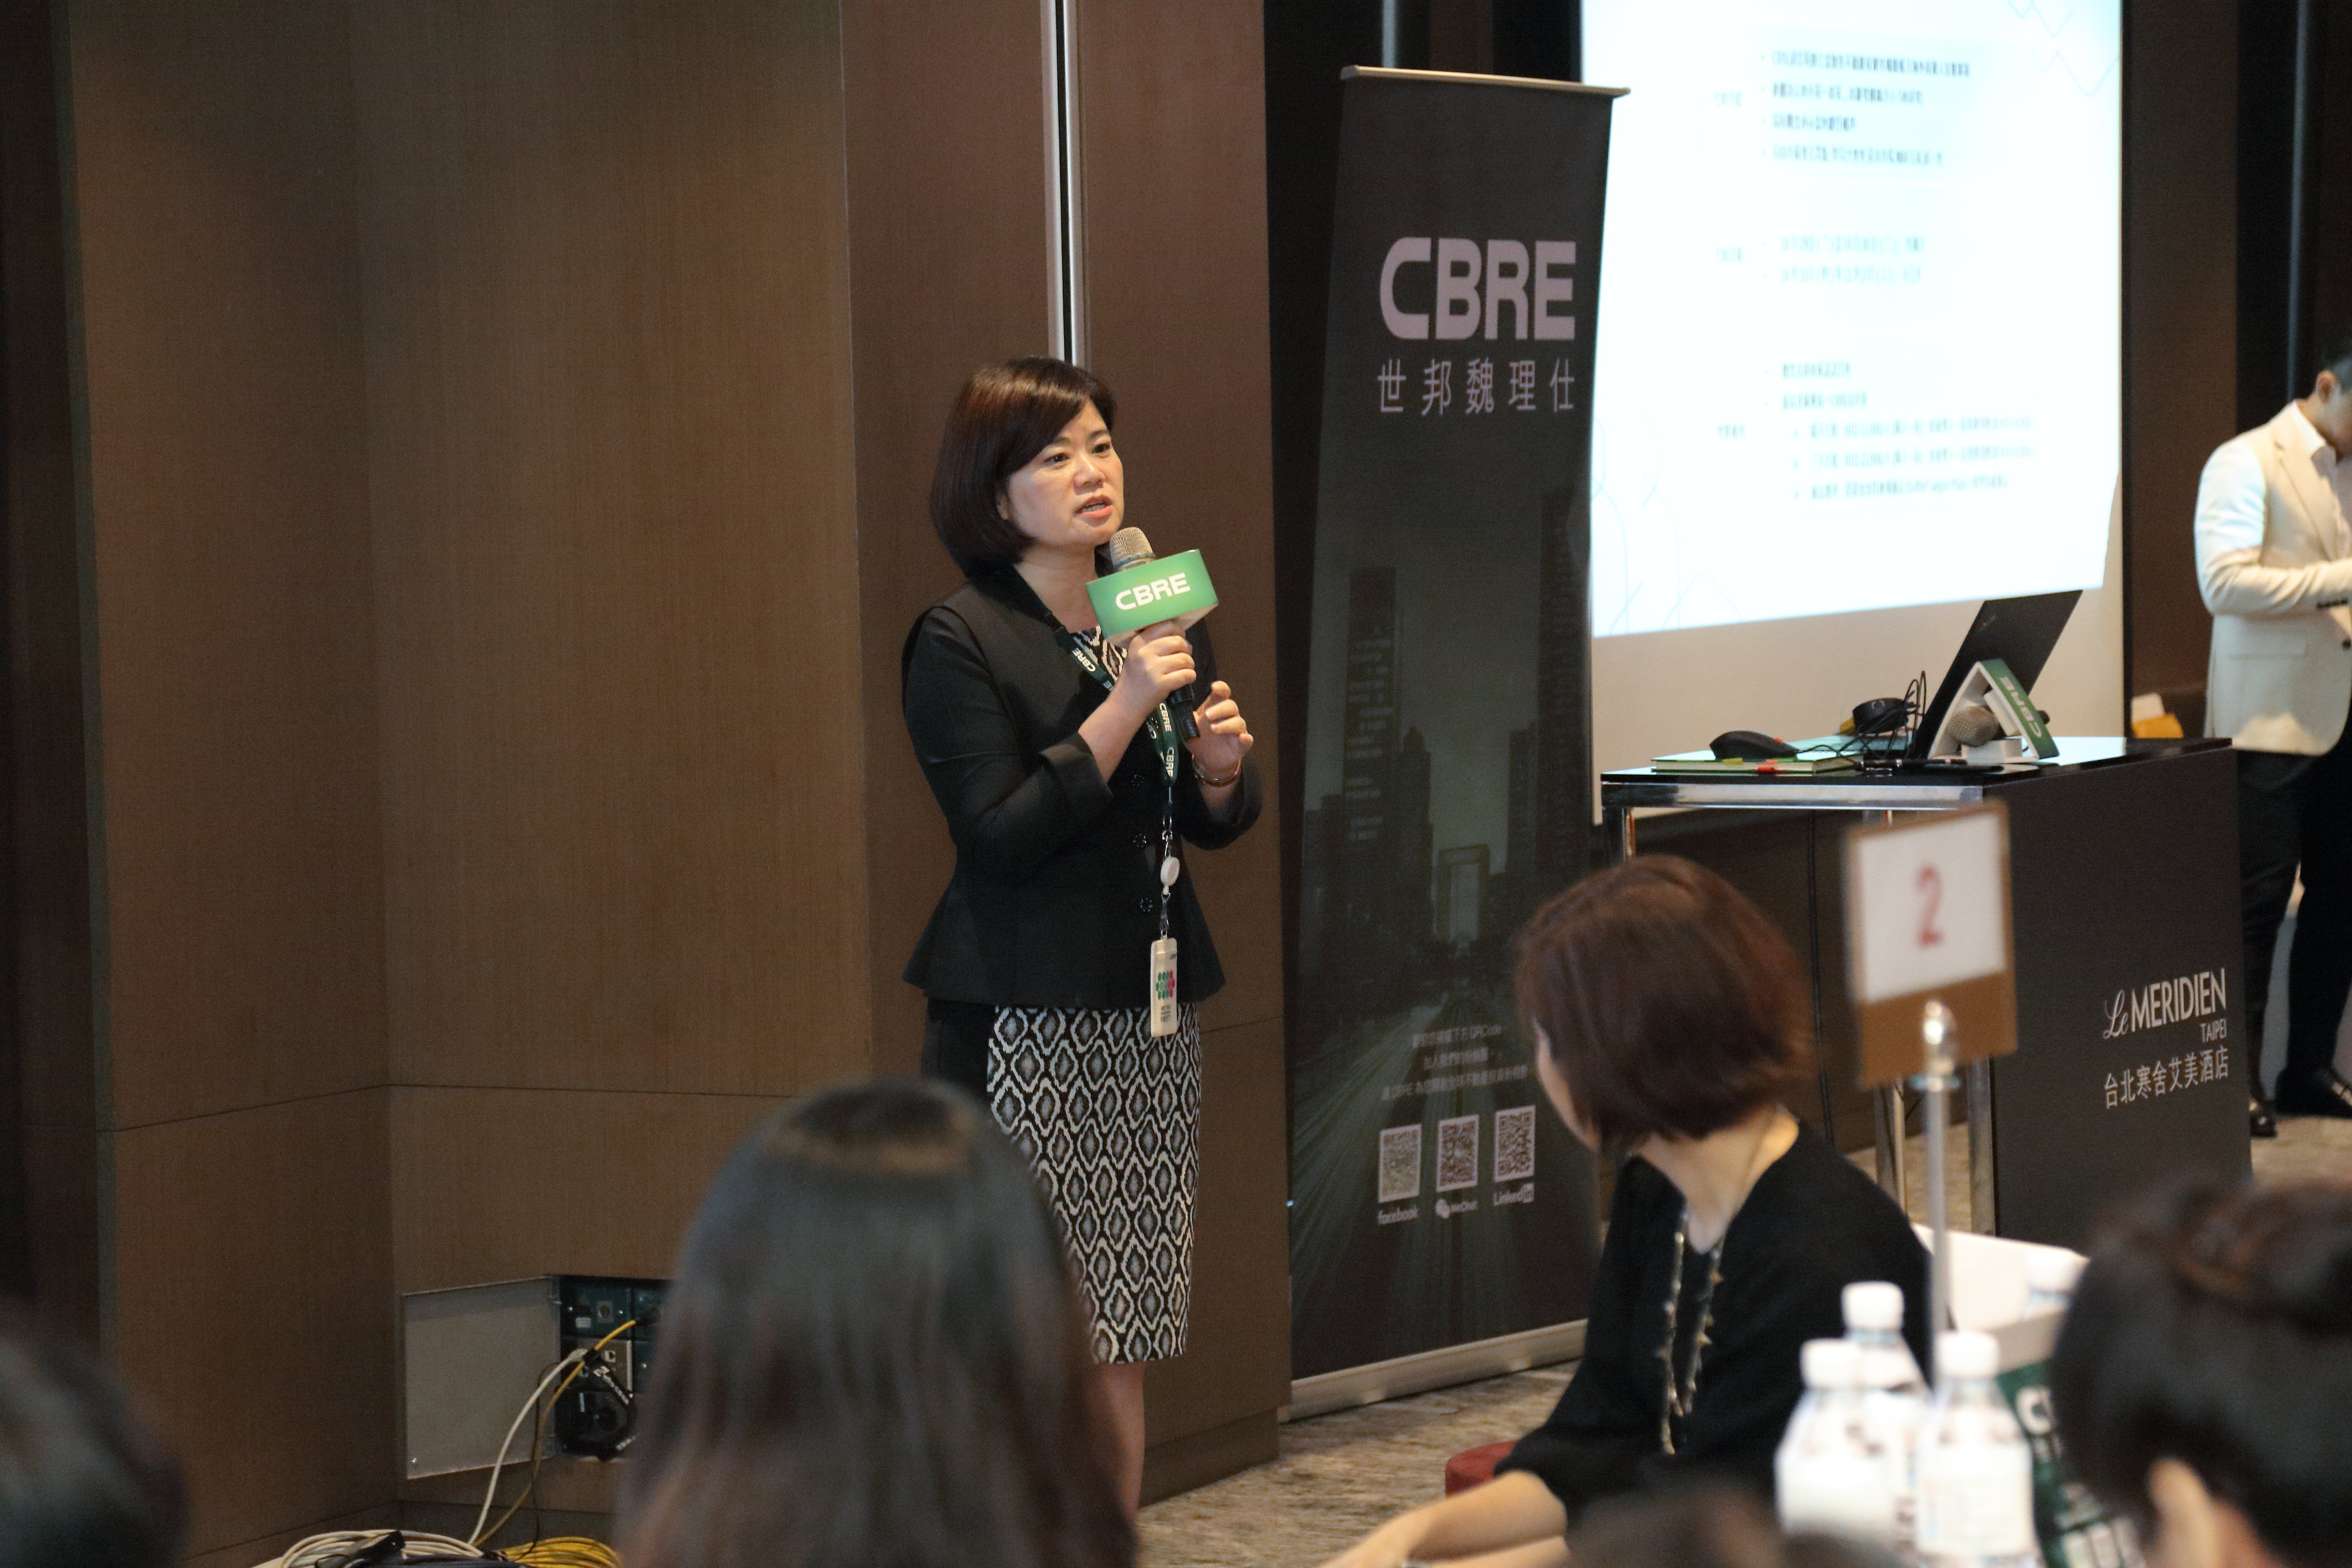 CBRE - Hội thảo Bất động sản TP Hồ Chí Minh tại Đài Loan